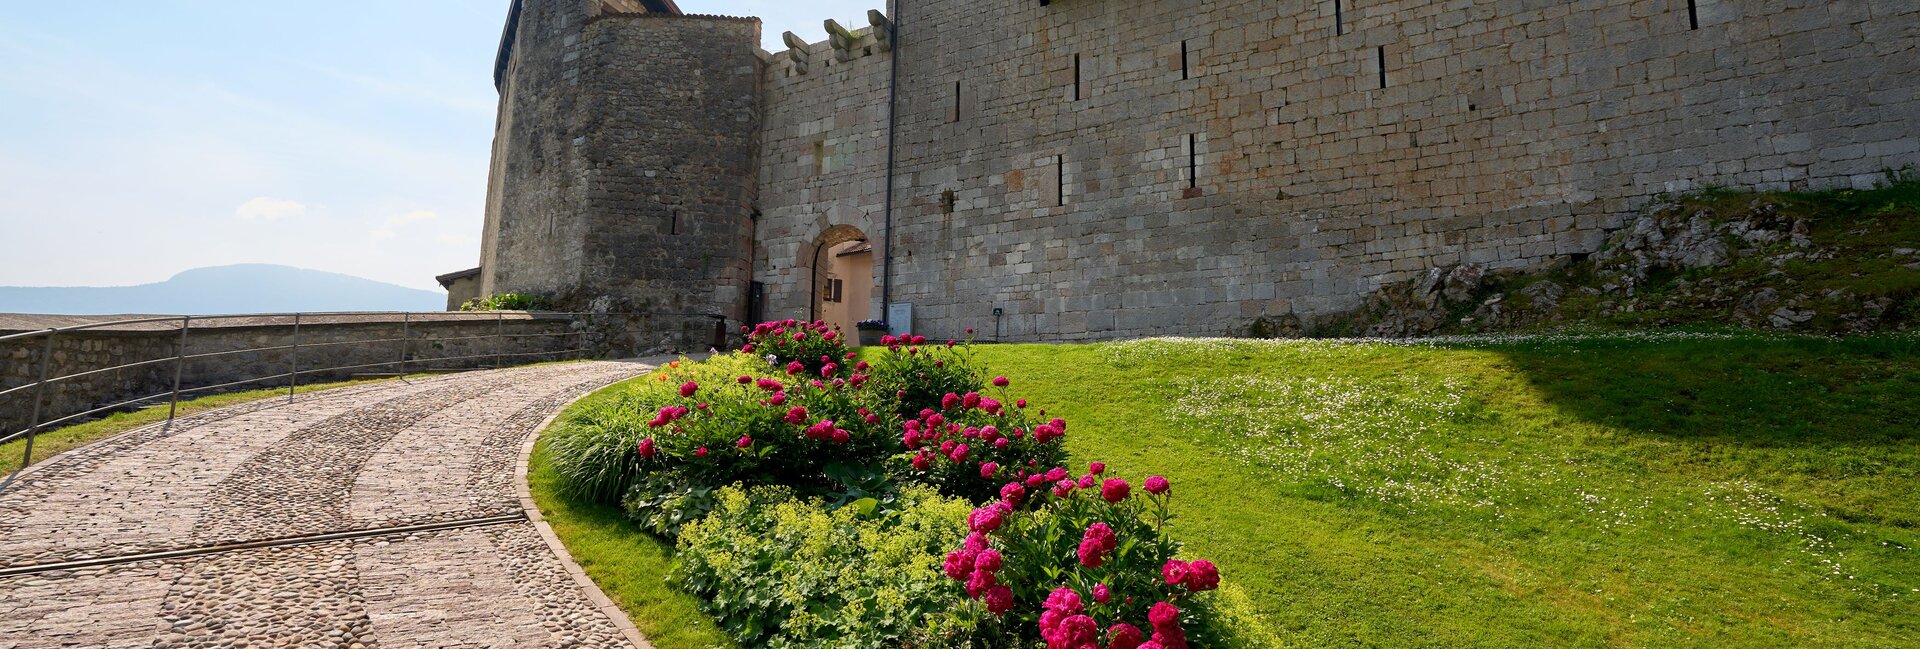 Castel Stenico